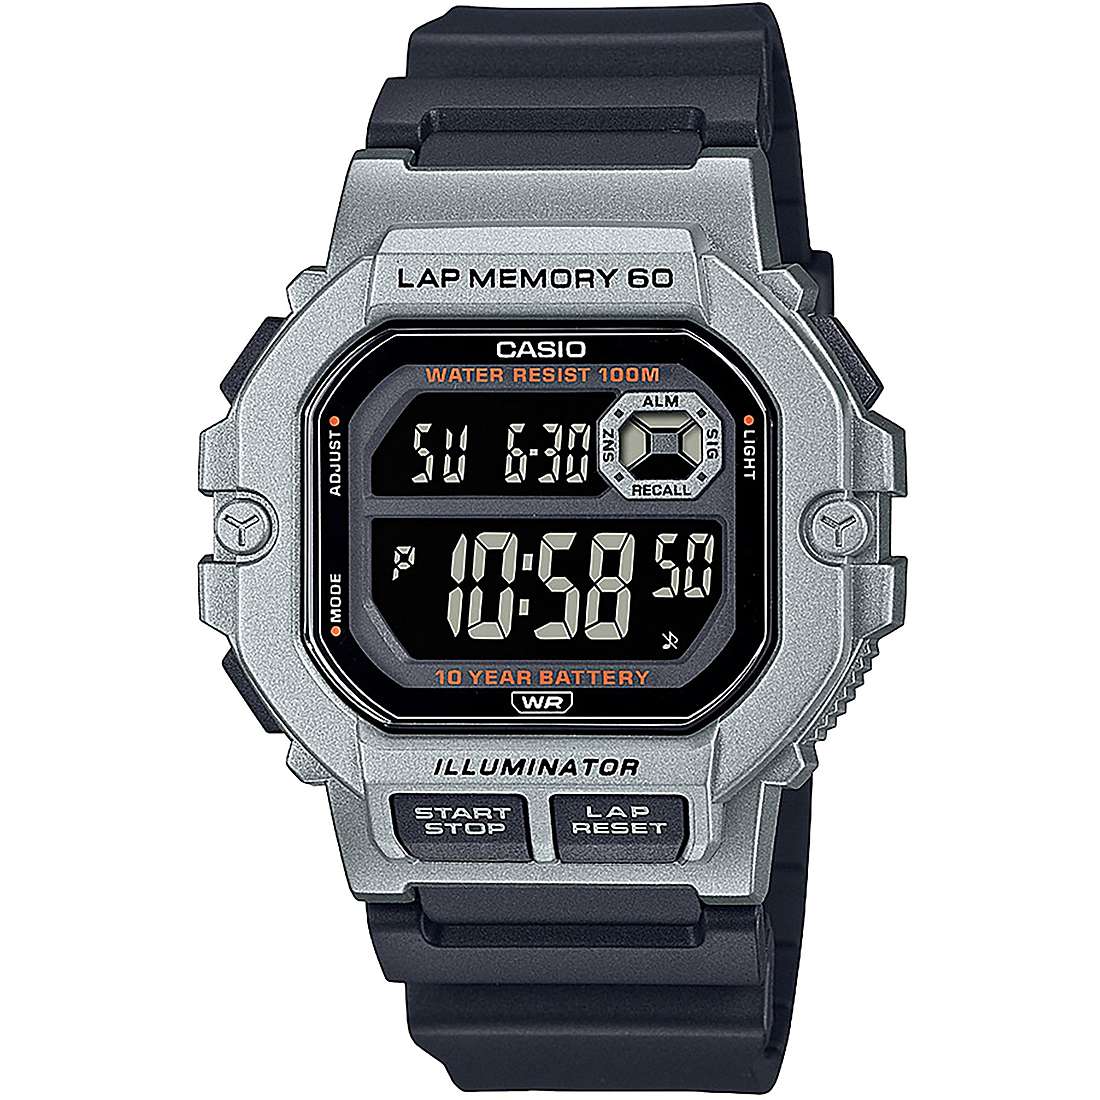 watch digital man Casio Casio Collection WS-1400H-1BVEF